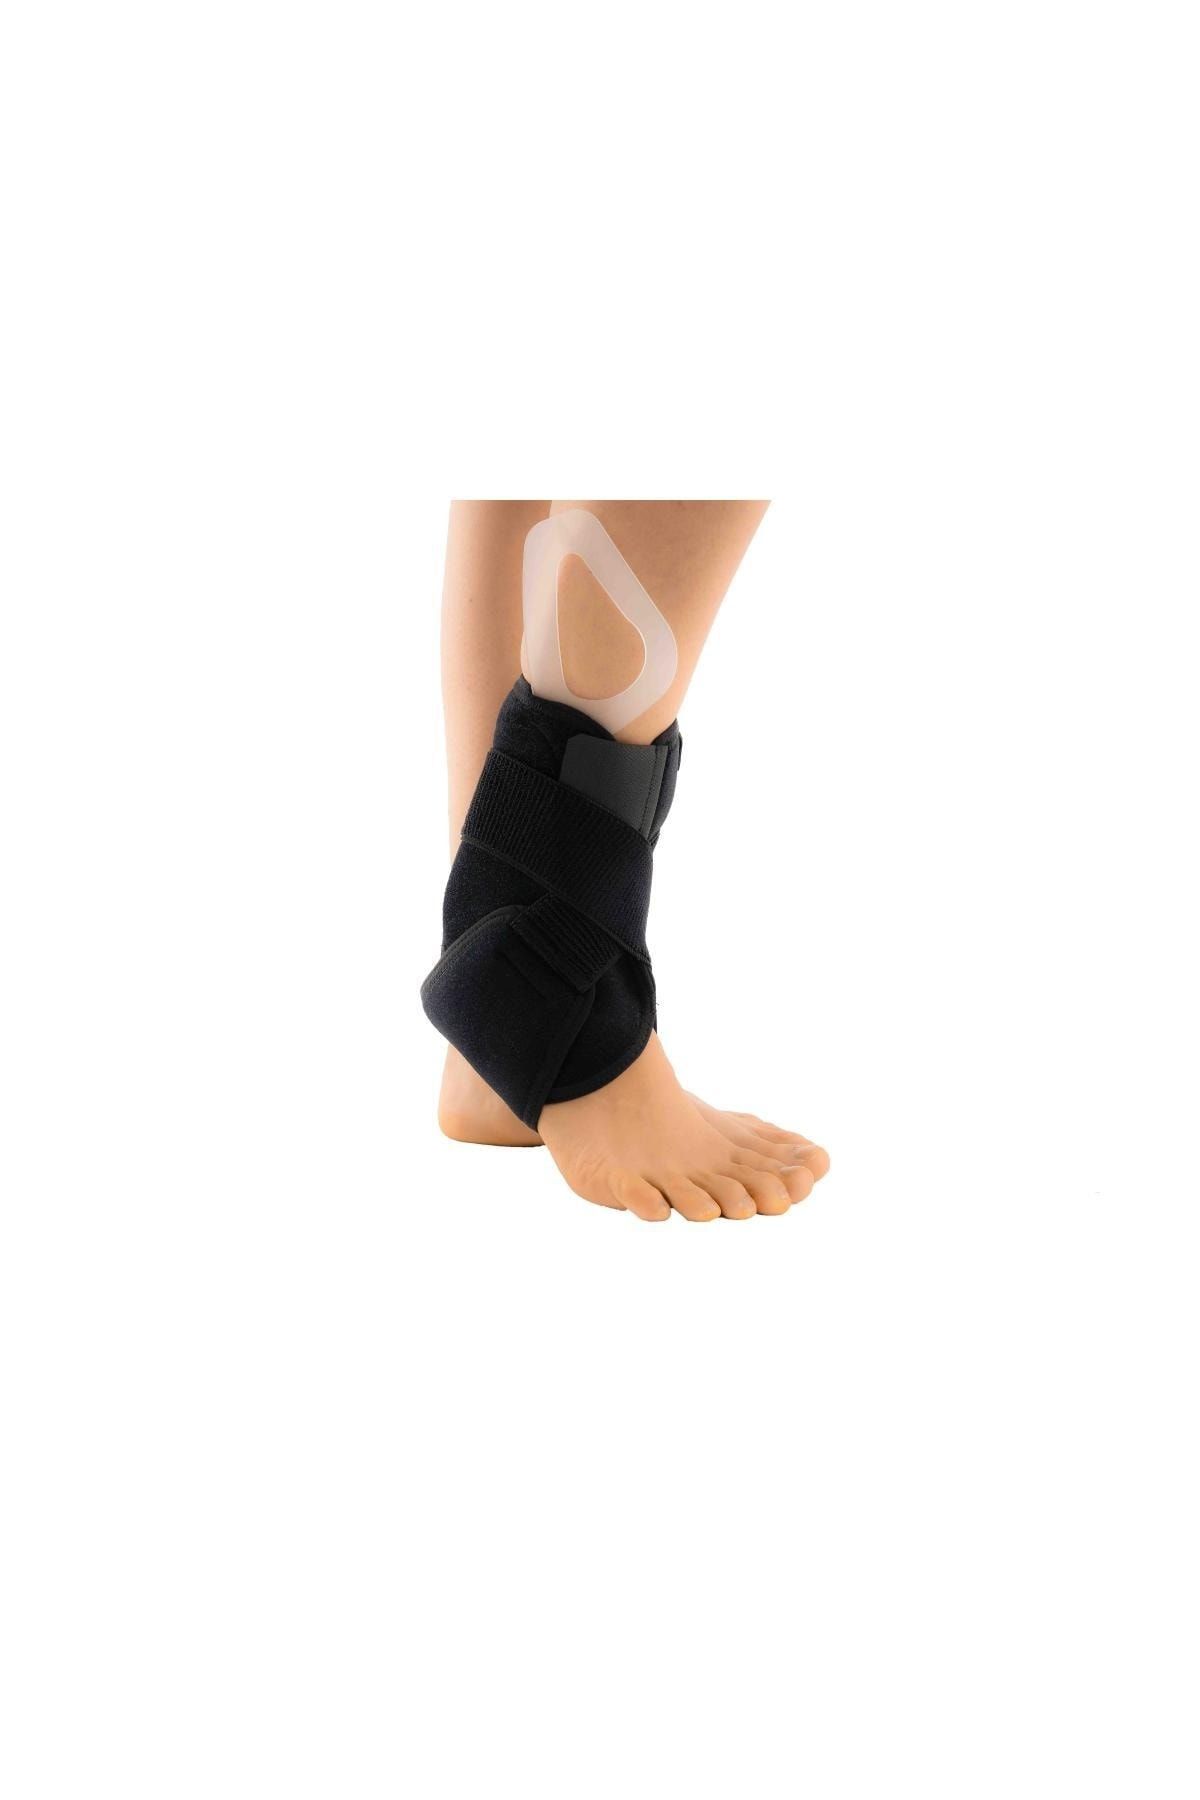 Ortholand Plastik Destekli Ayak Bilekliği (ayak Bileği Stabilizasyon )